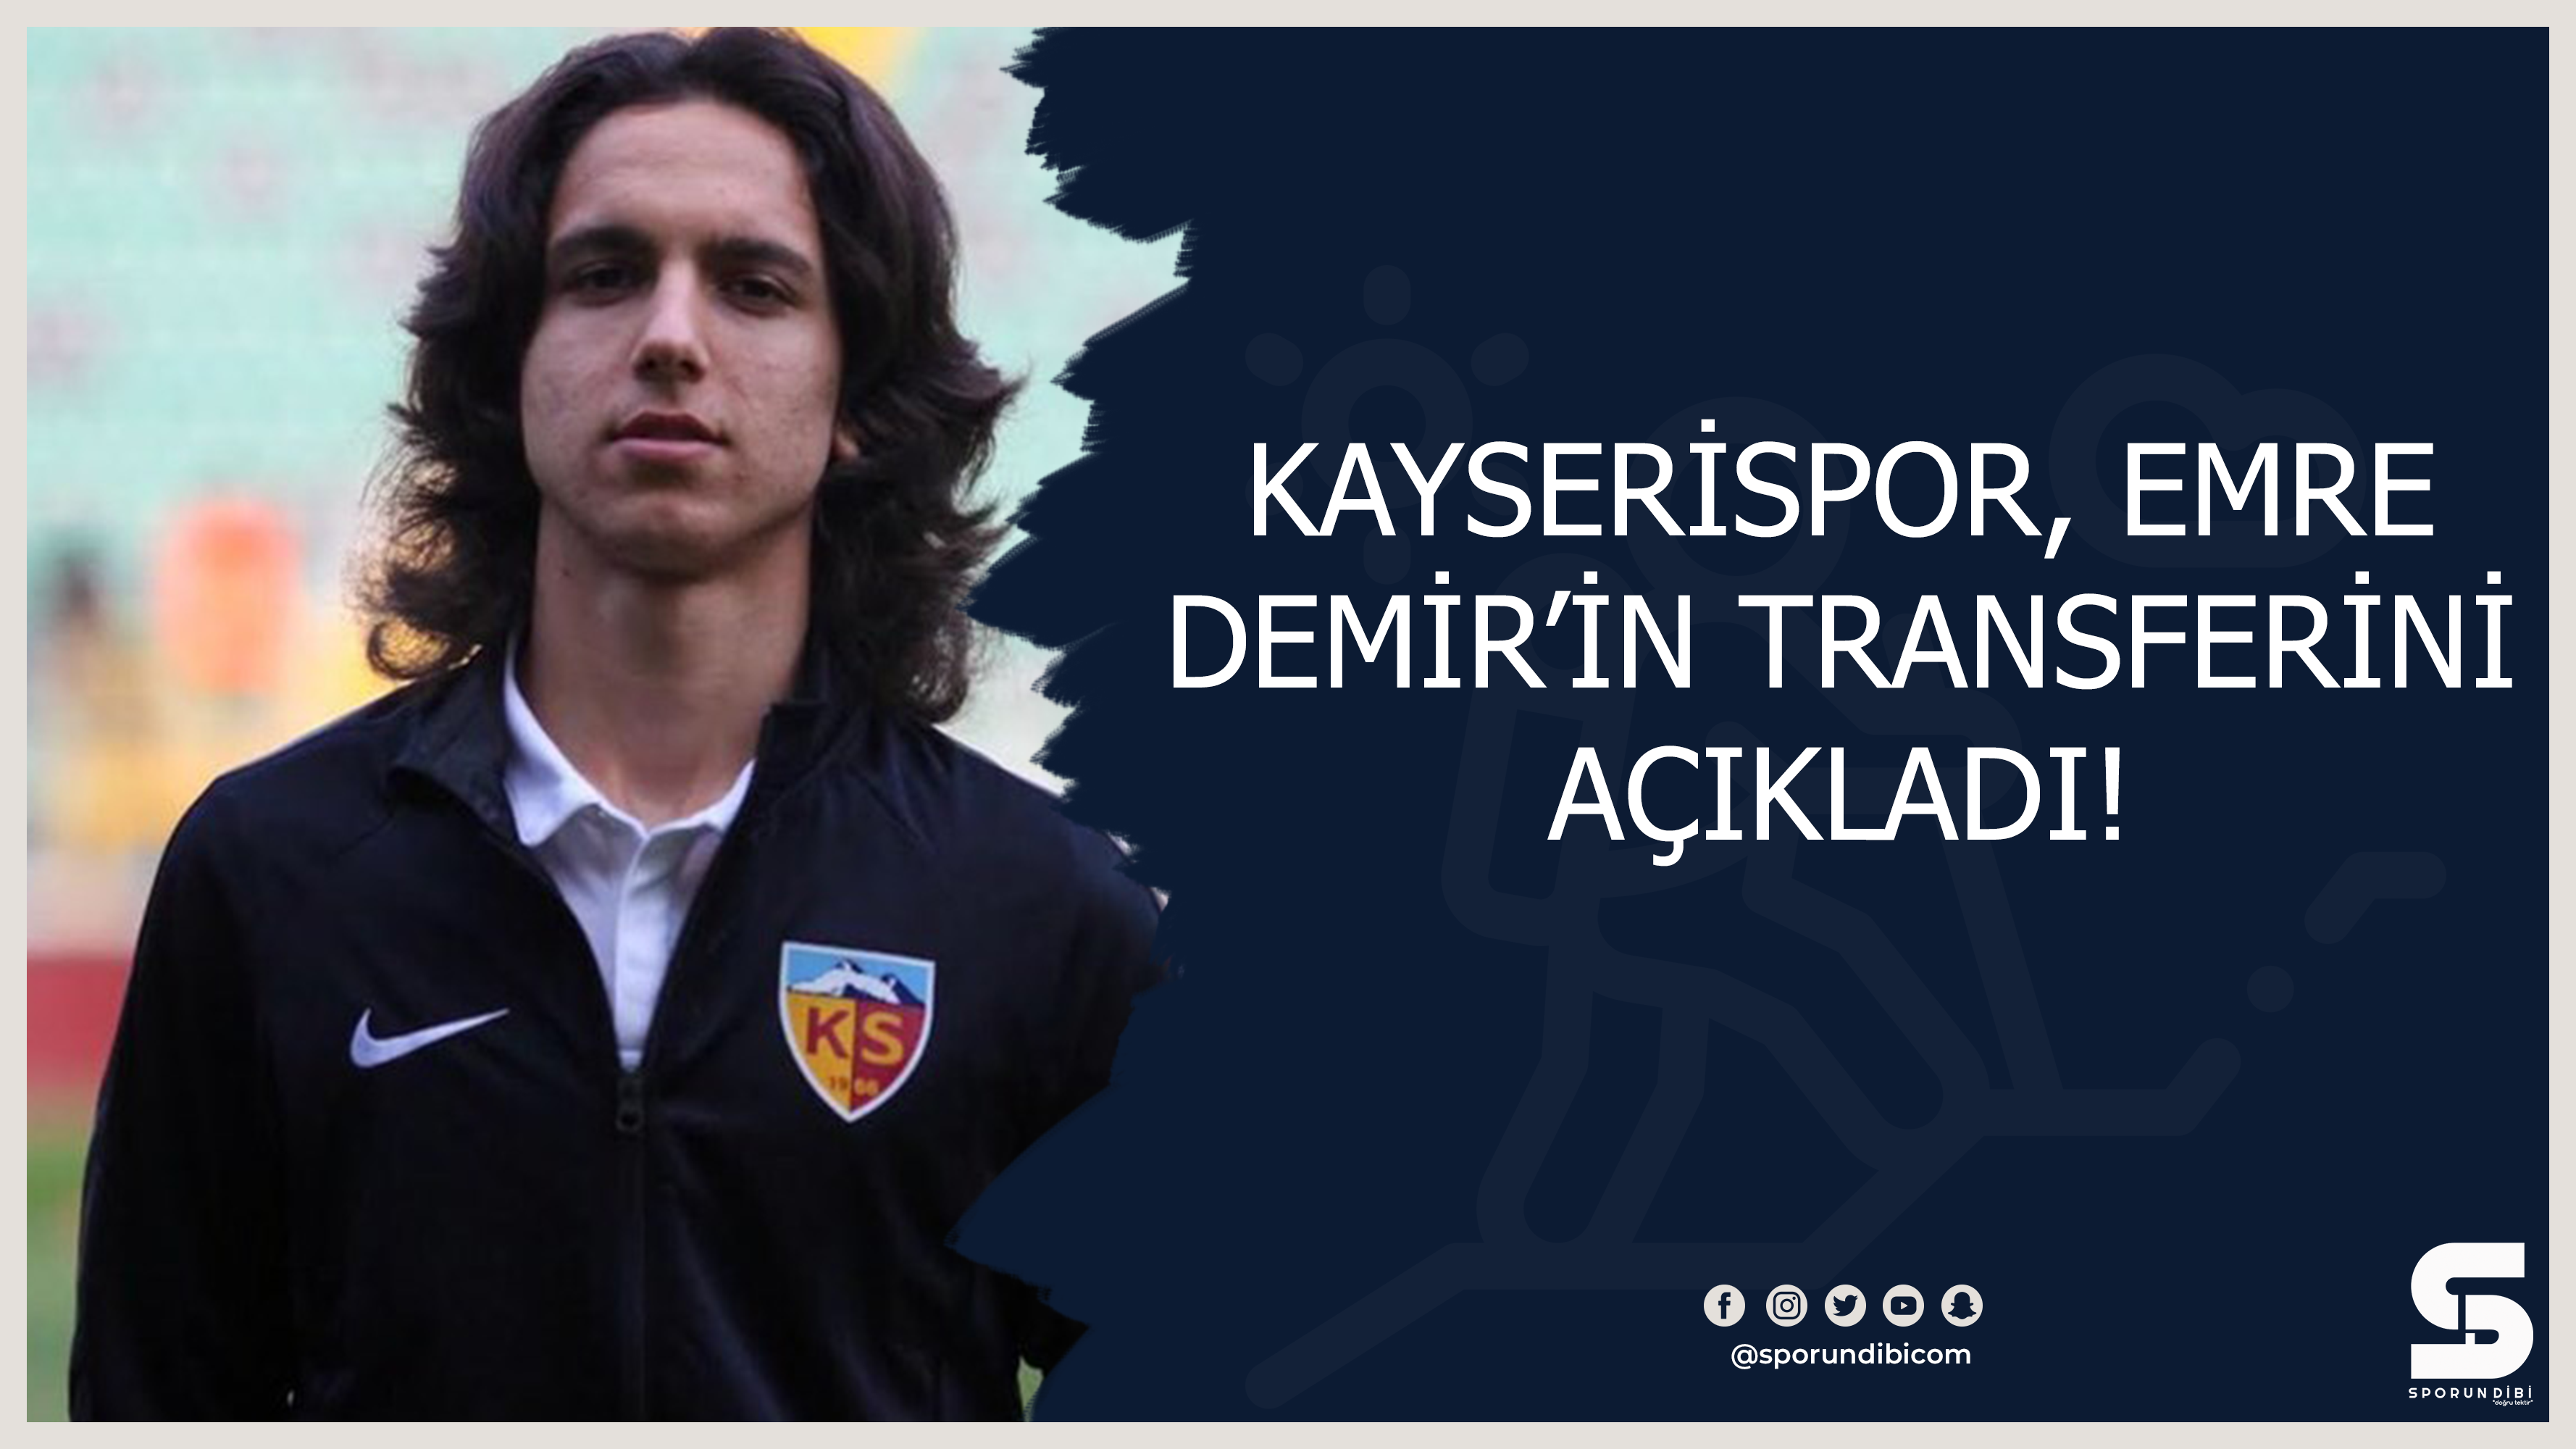 Kayserispor, Emre Demir'in transferini açıkladı!